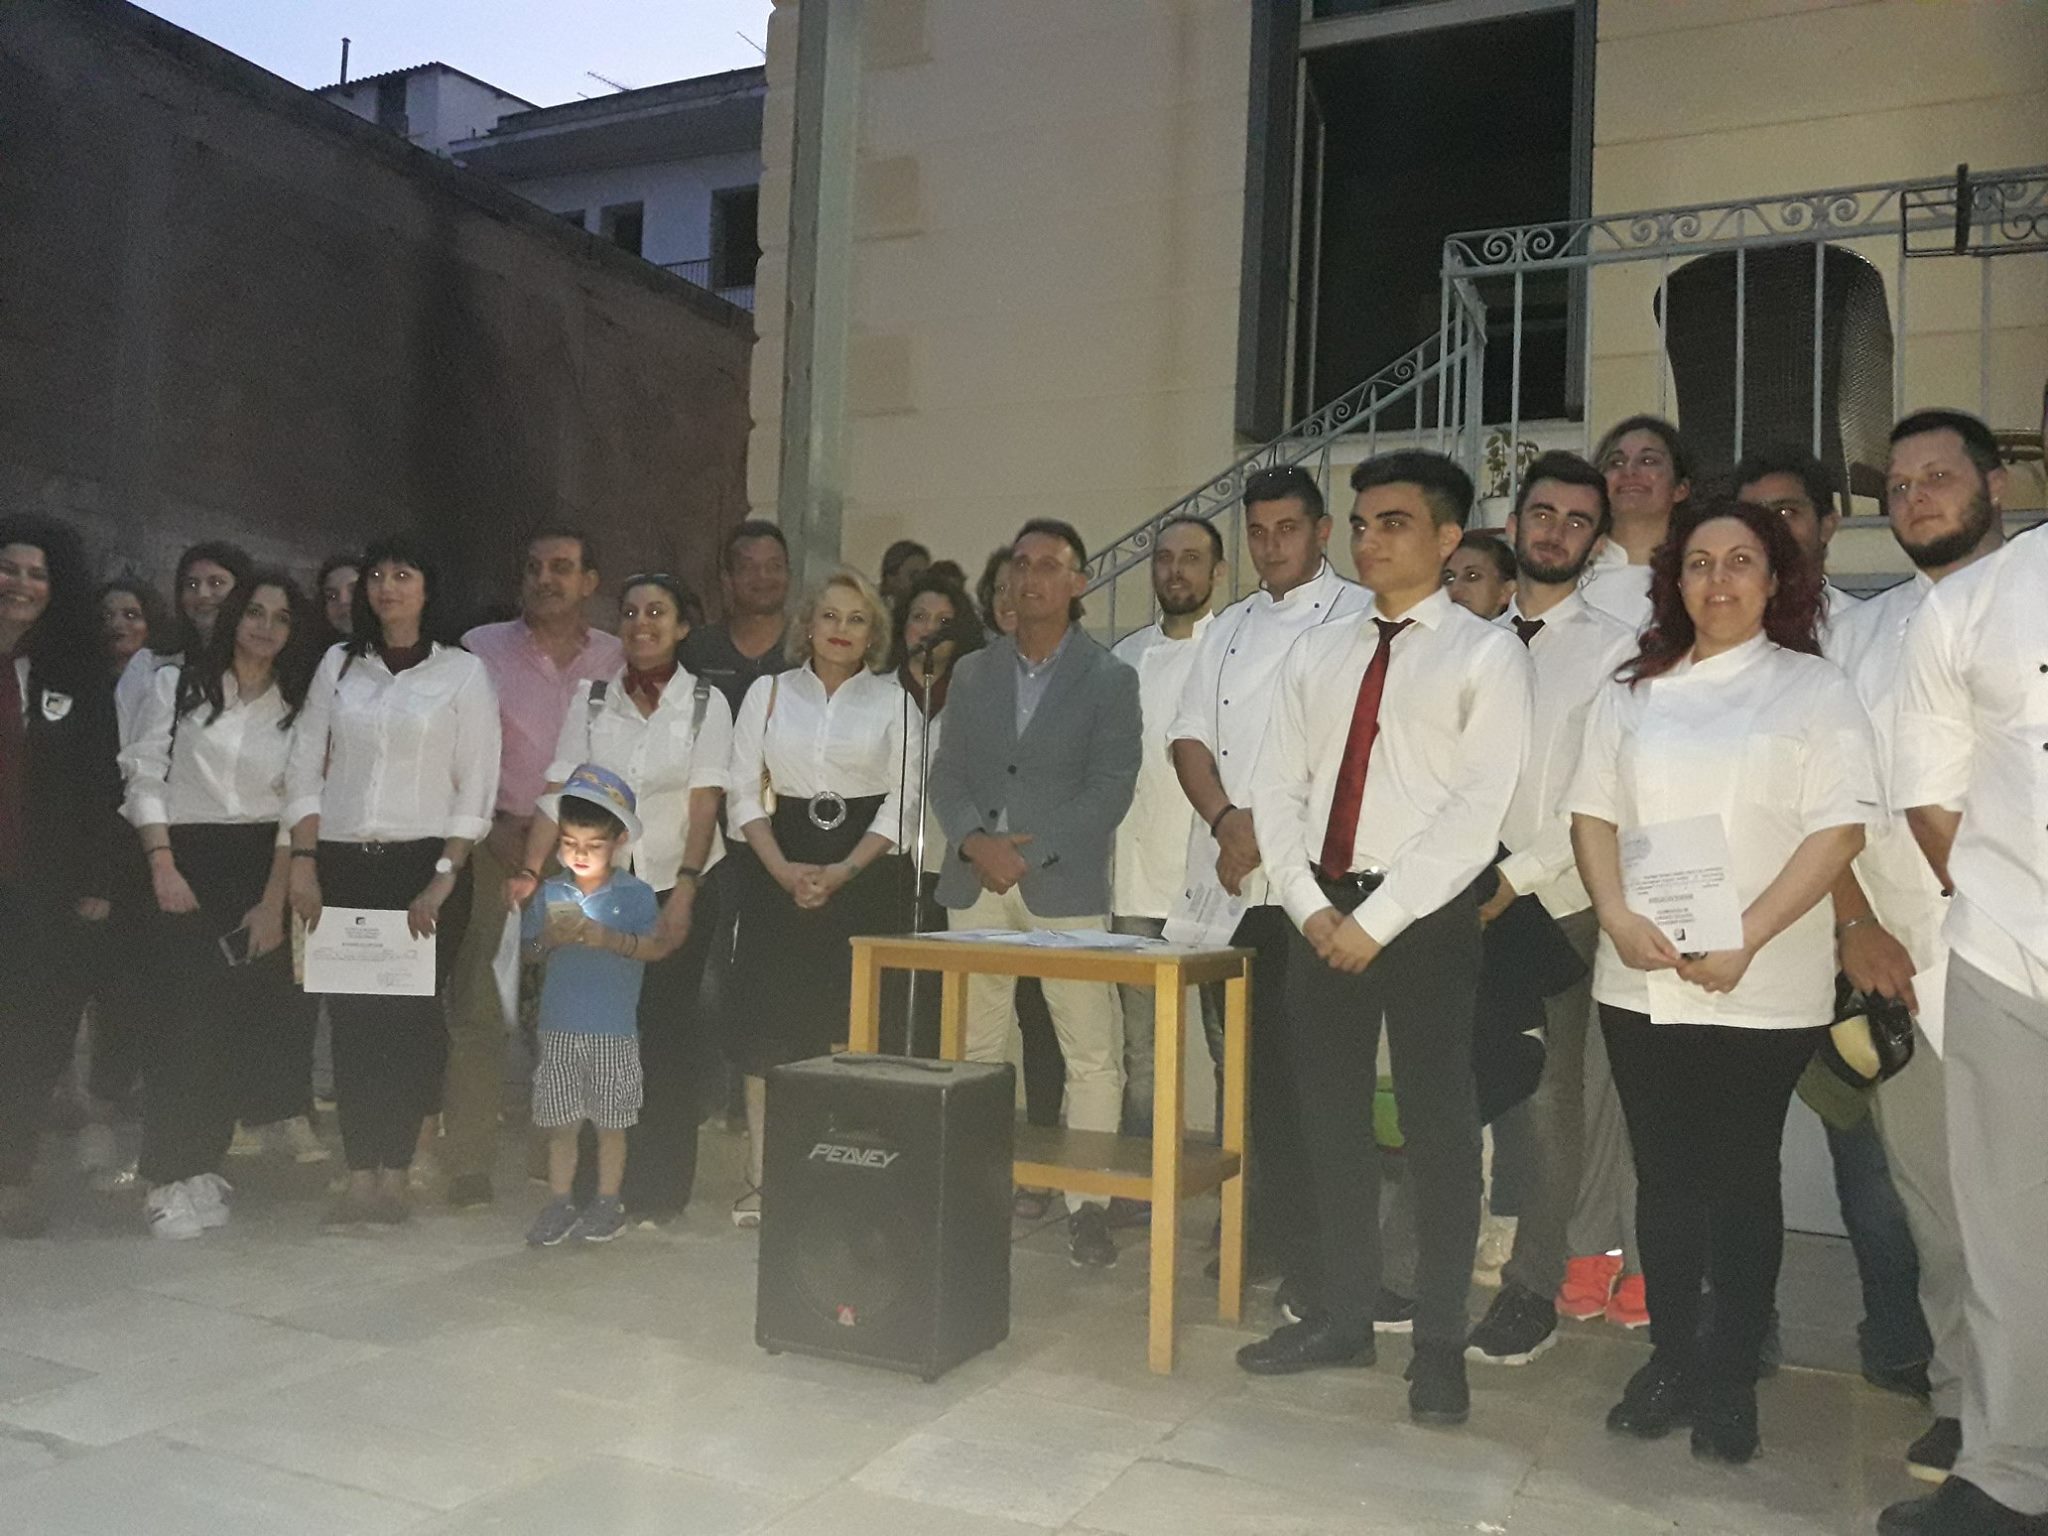 Άργος: Γιορτάζει τα 10 χρόνια της στην πόλη η Τουριστική Σχολή